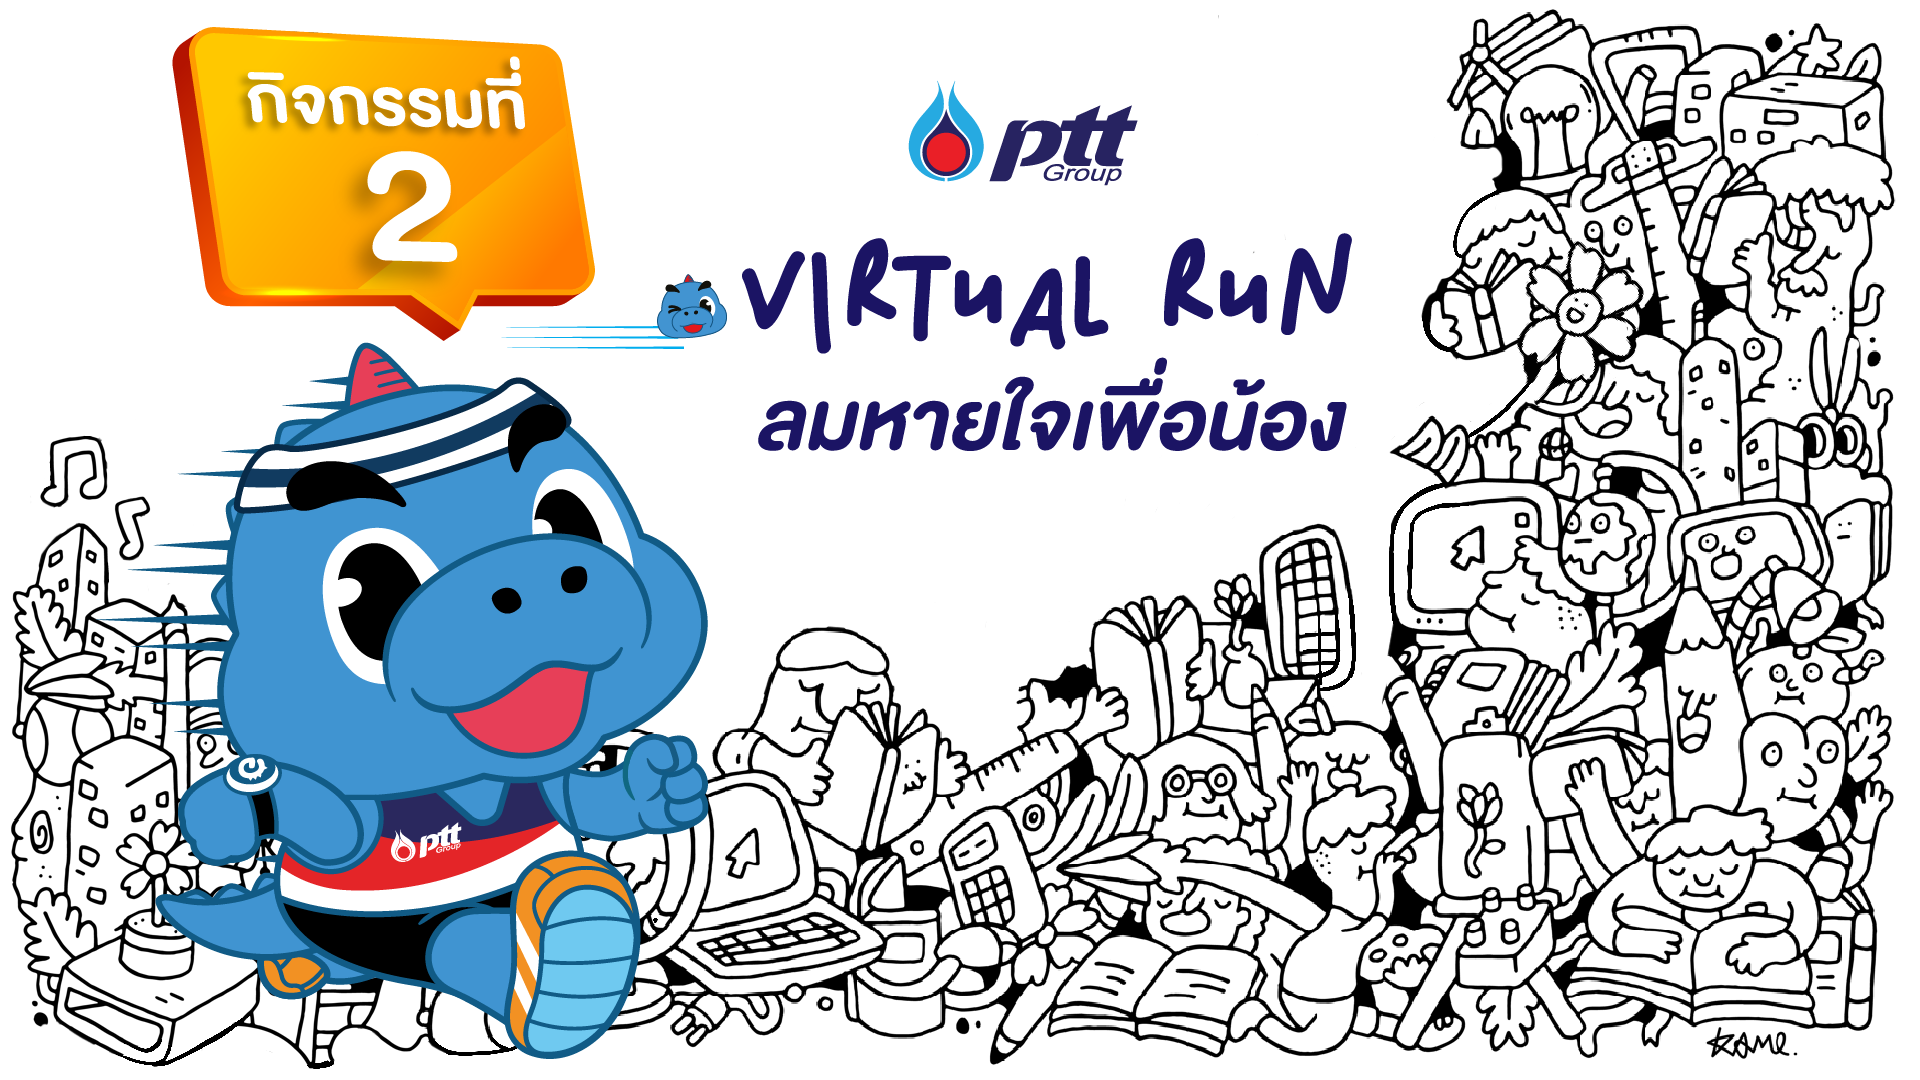 2022-05-26_PTT Virtual Run_KV_Pop up-02